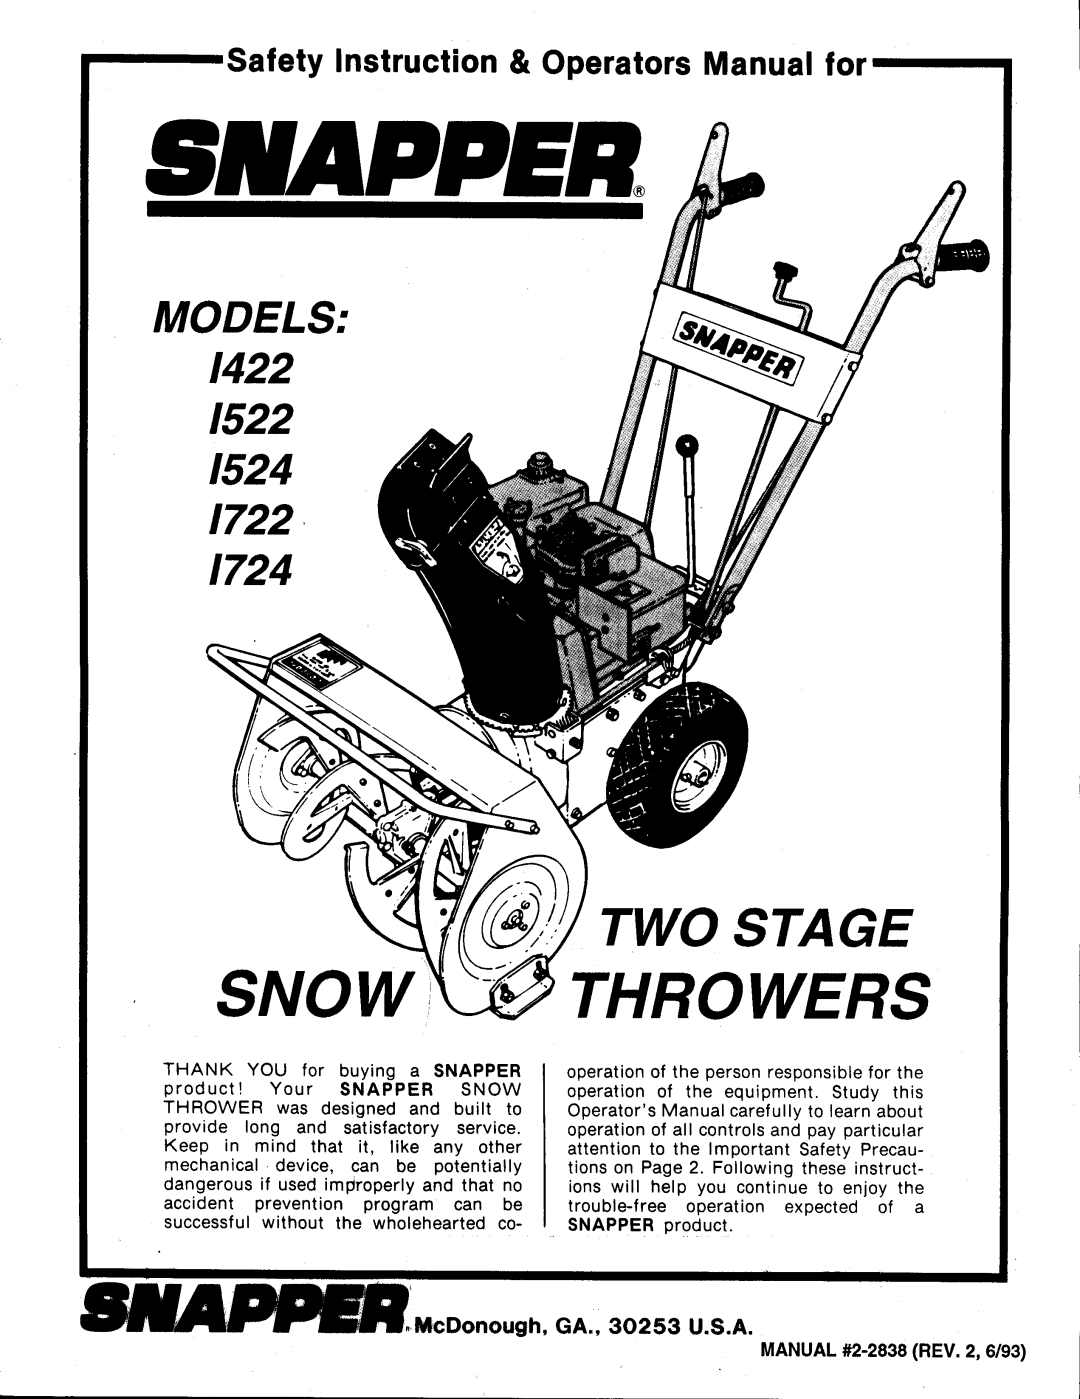 Snapper 1722, 1724, 1524, 1422, 1522 manual 